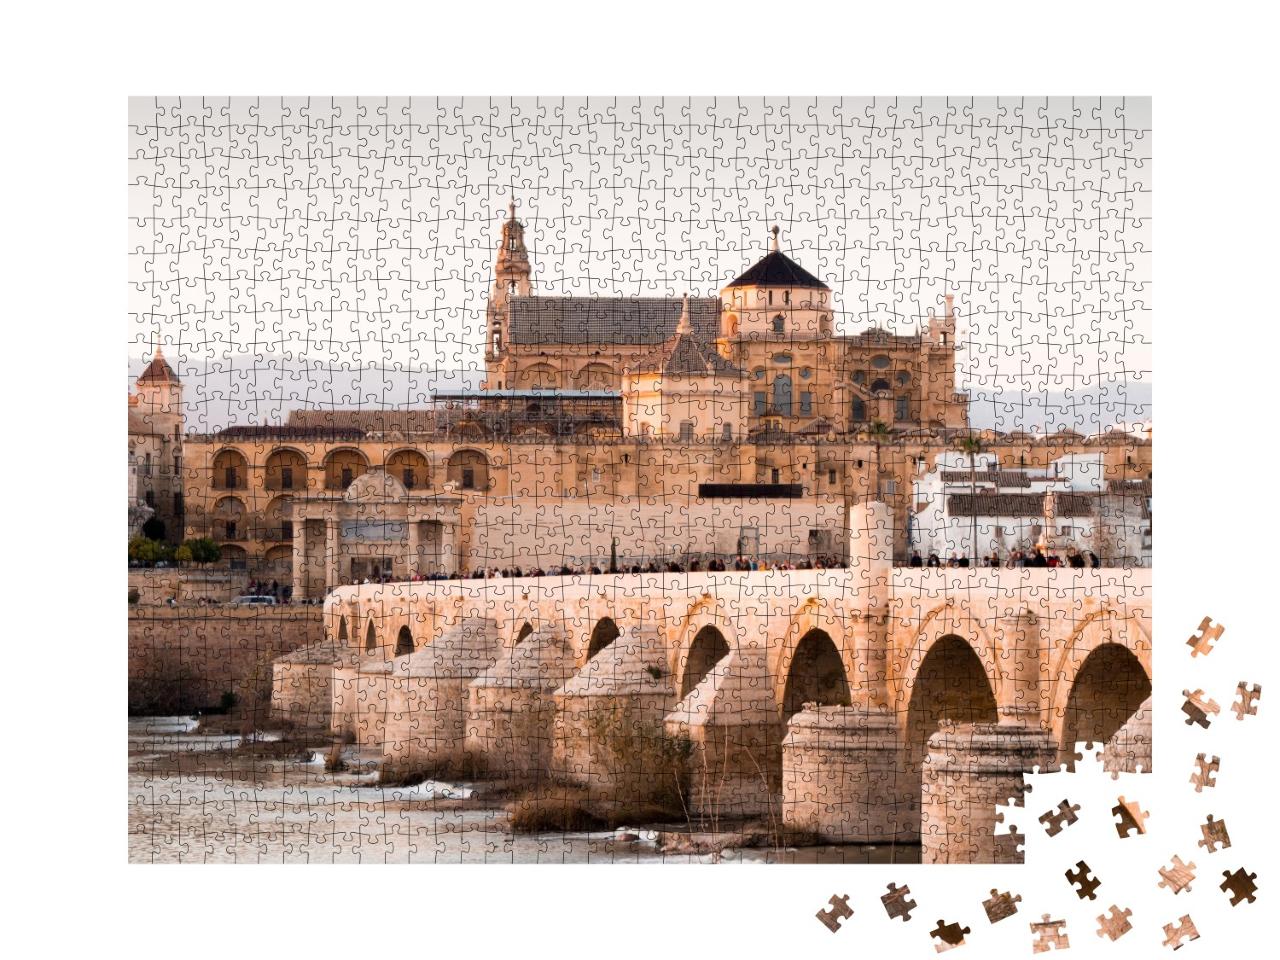 Puzzle de 1000 pièces « Mezquia et pont romain de Cordoue en Espagne »